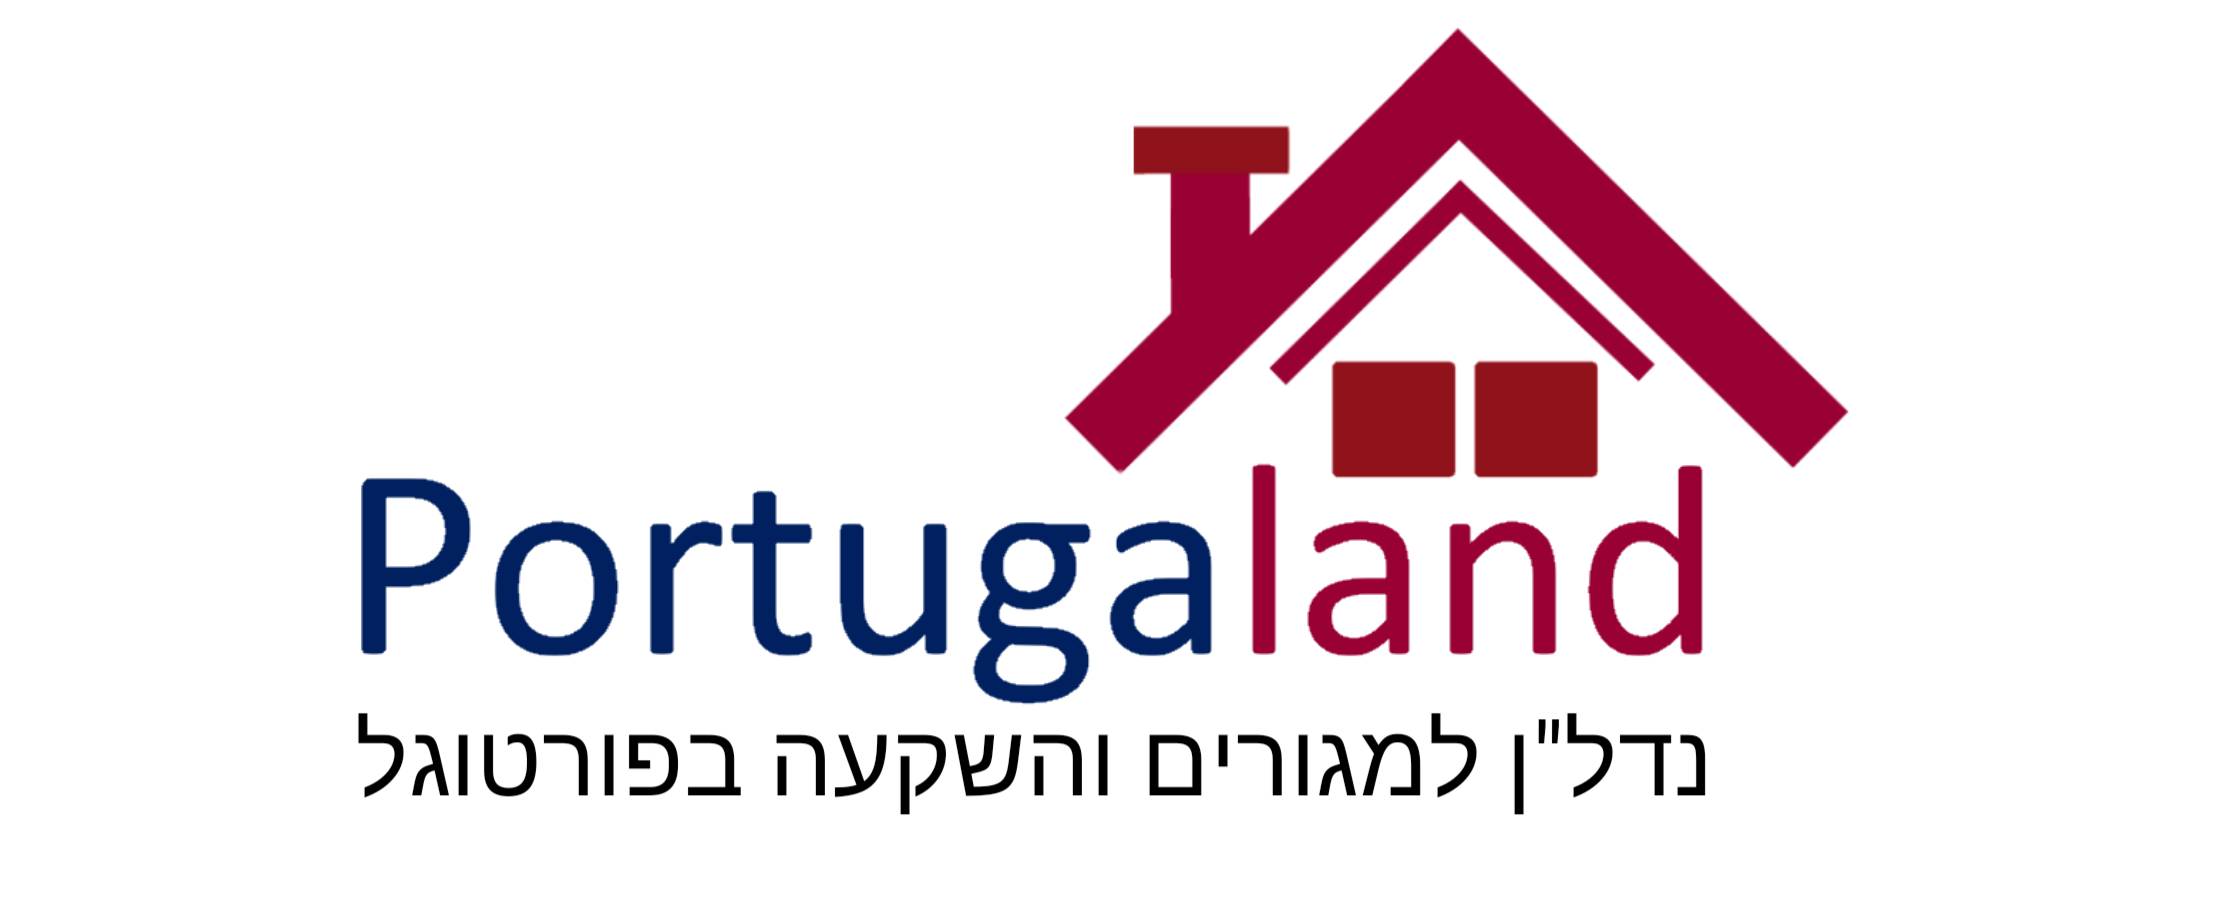 Portugaland - נדל"ן למגורים ולהשקעה בפורטוגל